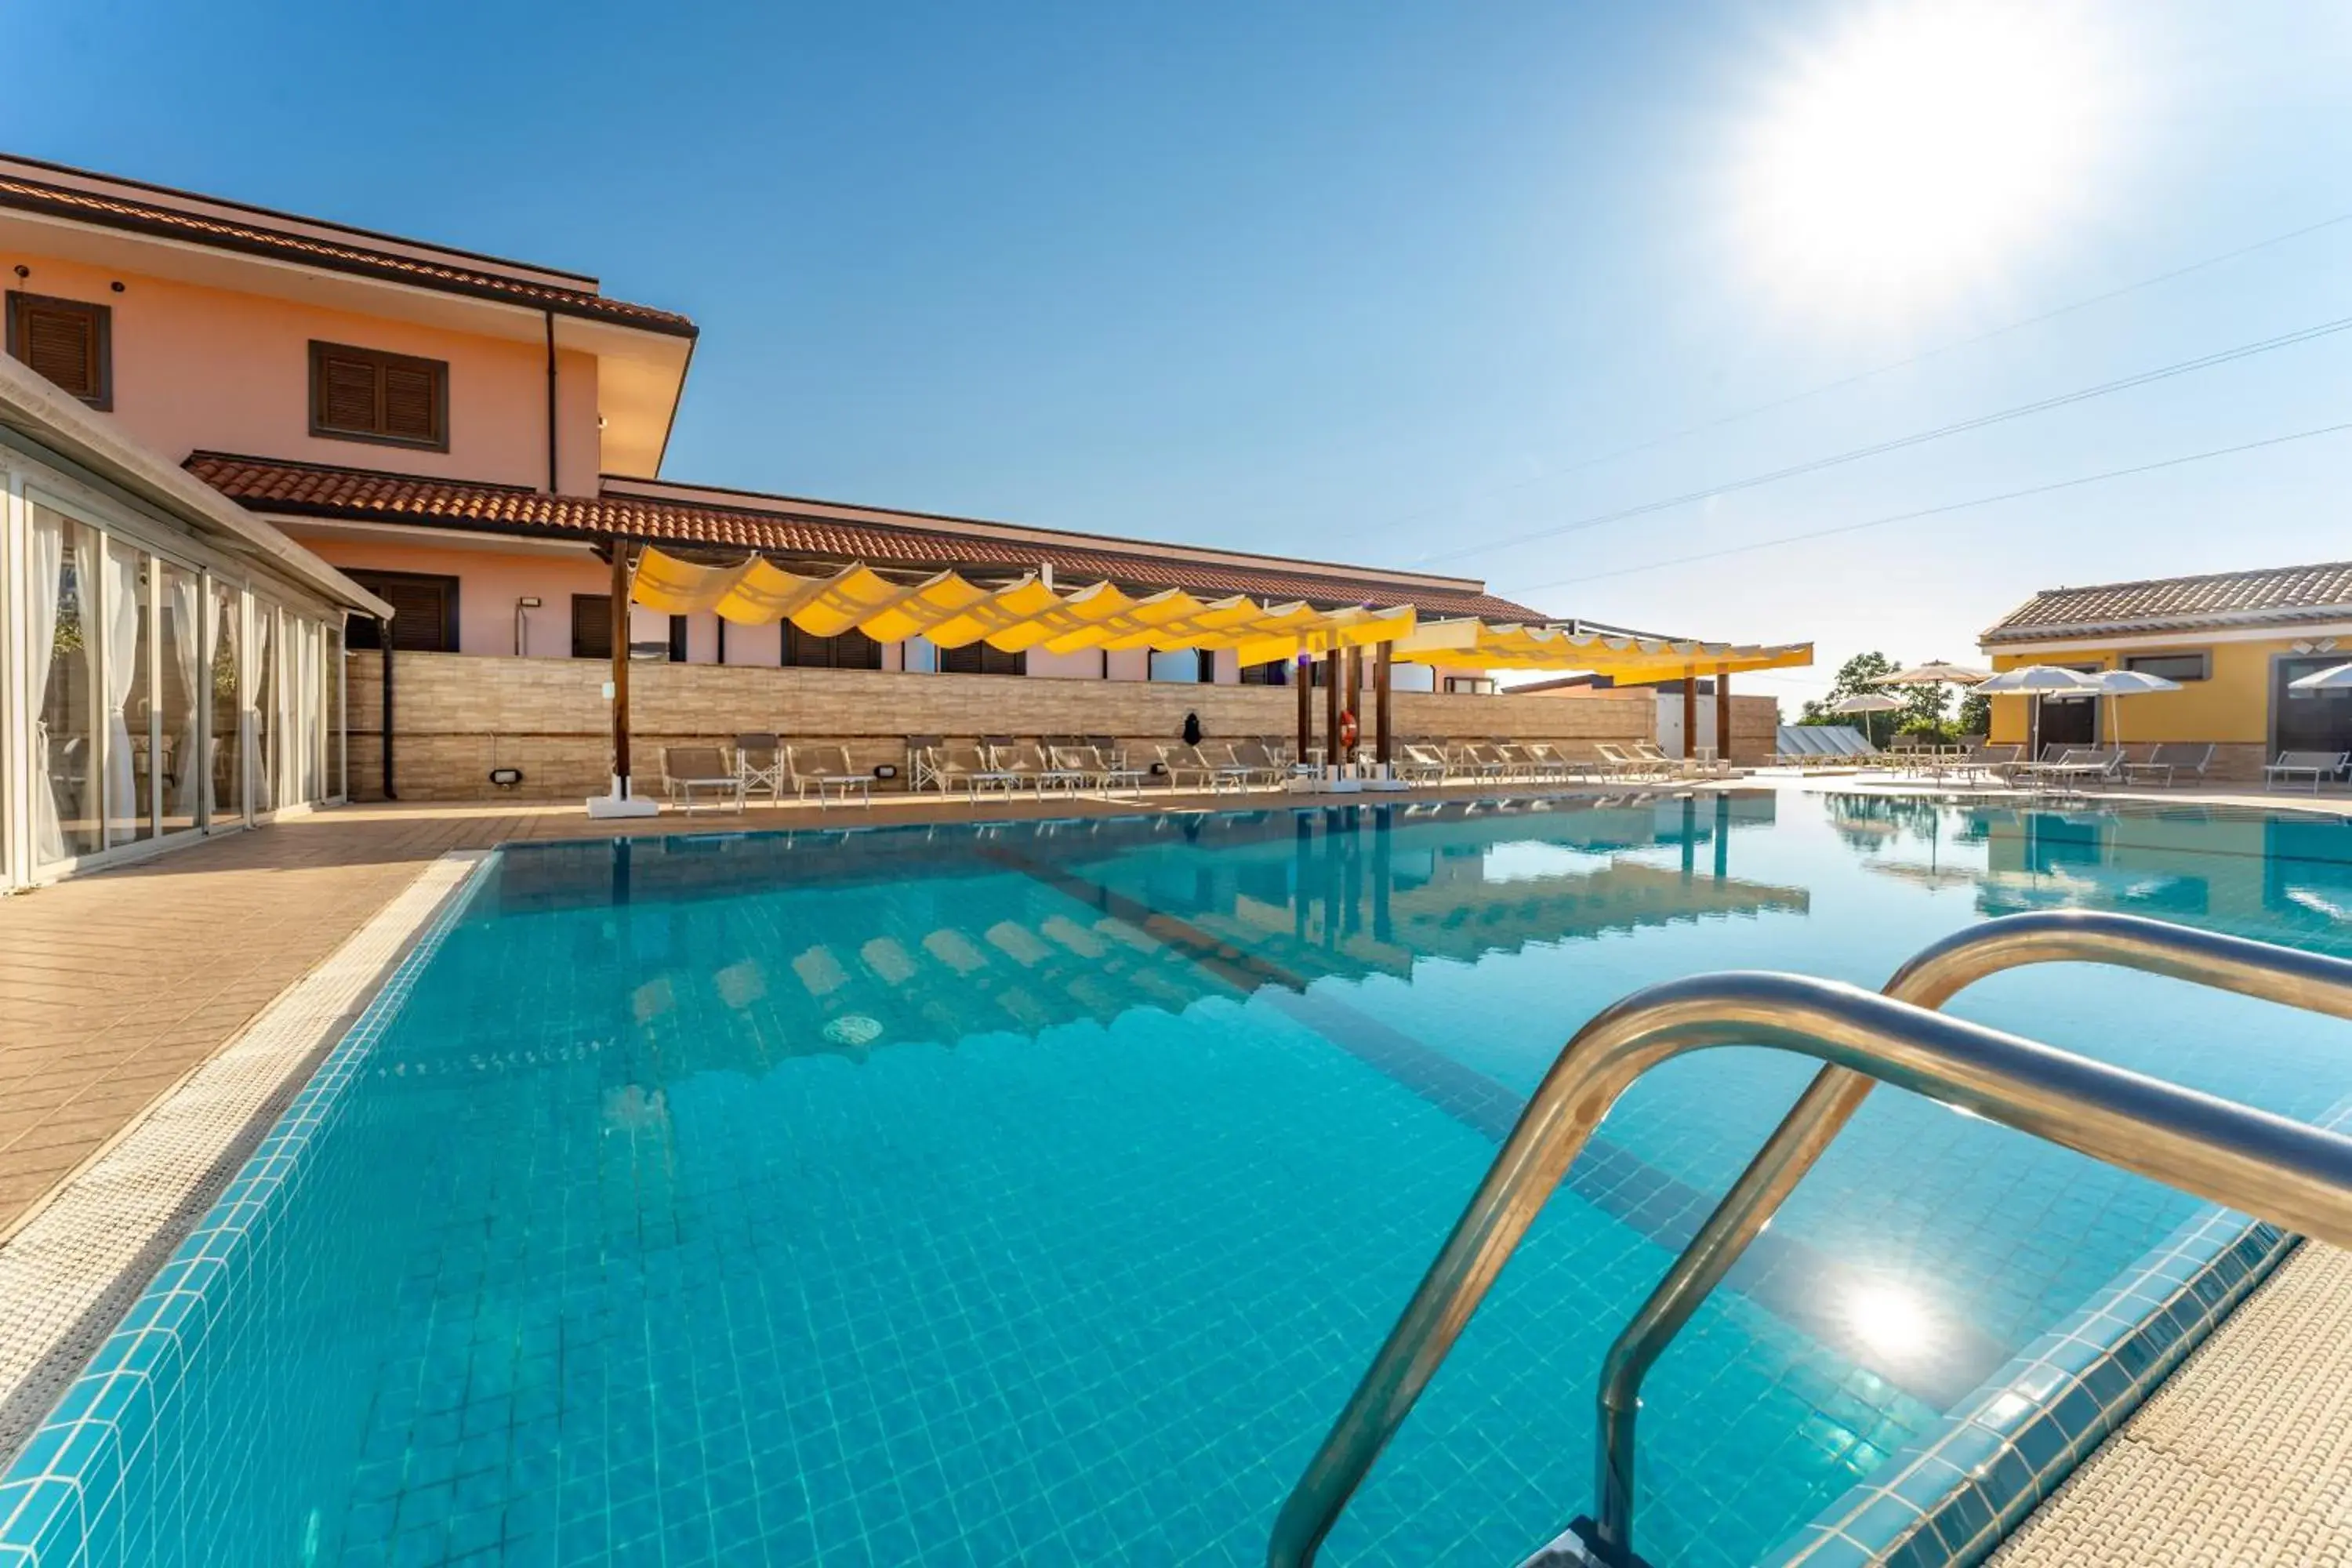 Swimming Pool in La Terra Dei Sogni Country Hotel